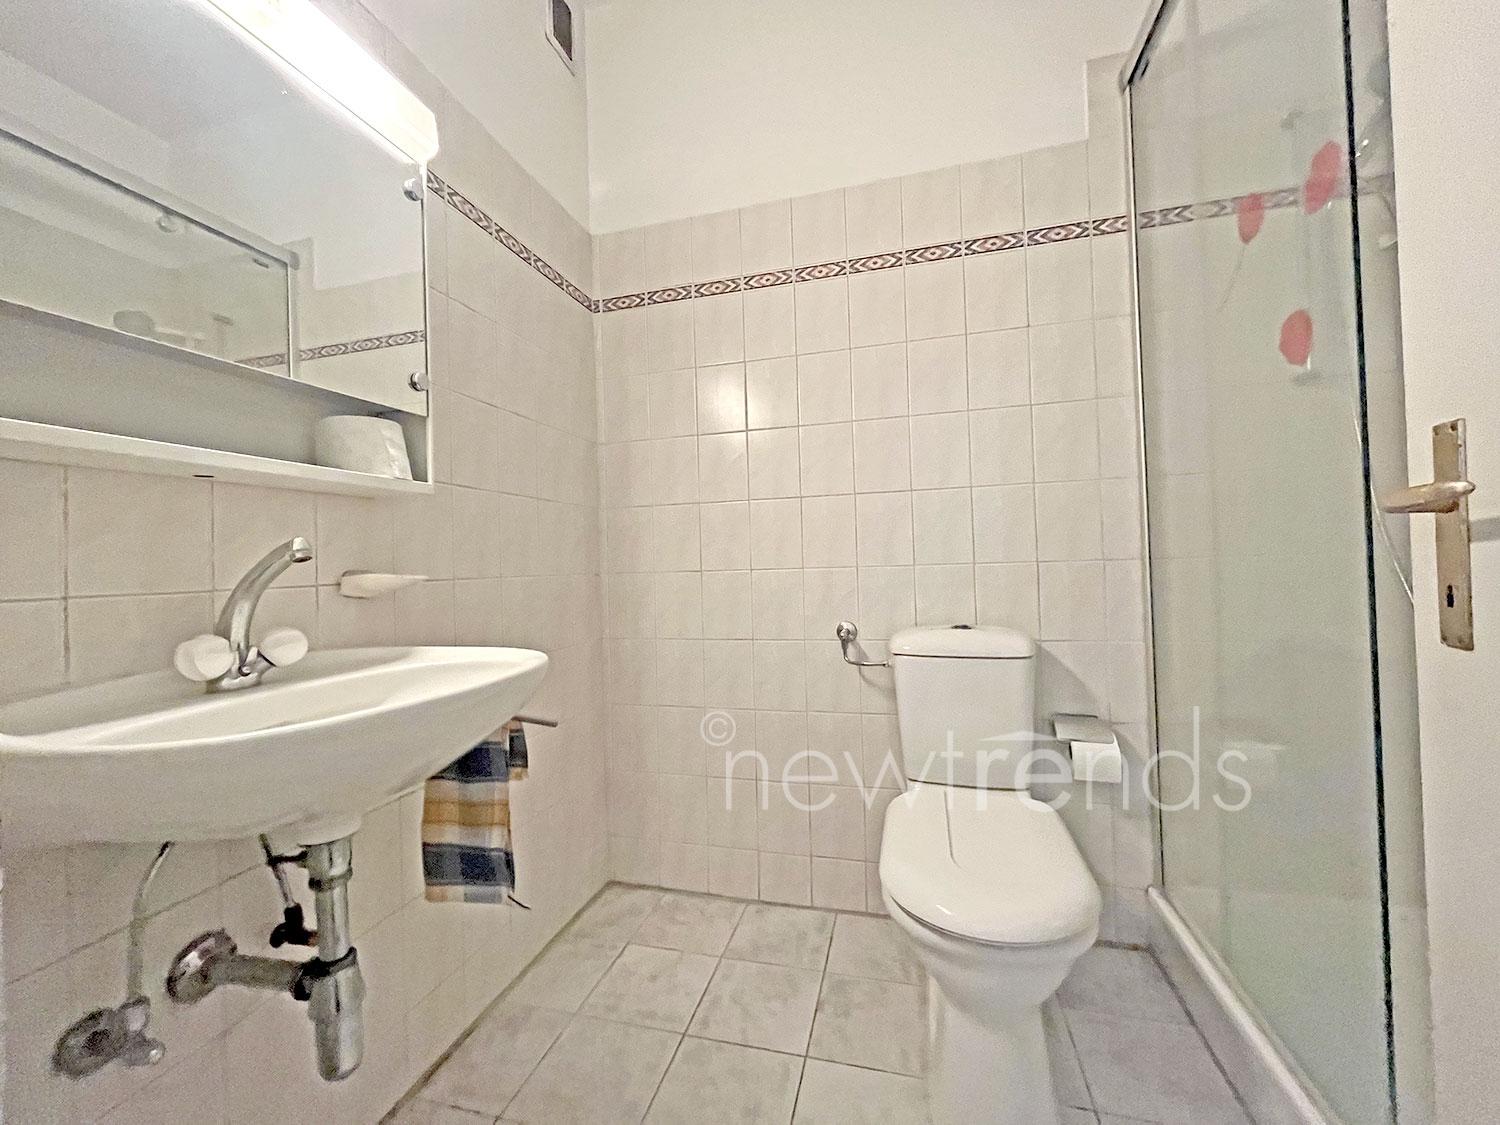 vendesi appartamento 3.5 locali a lugano: foto bagno con grande doccia